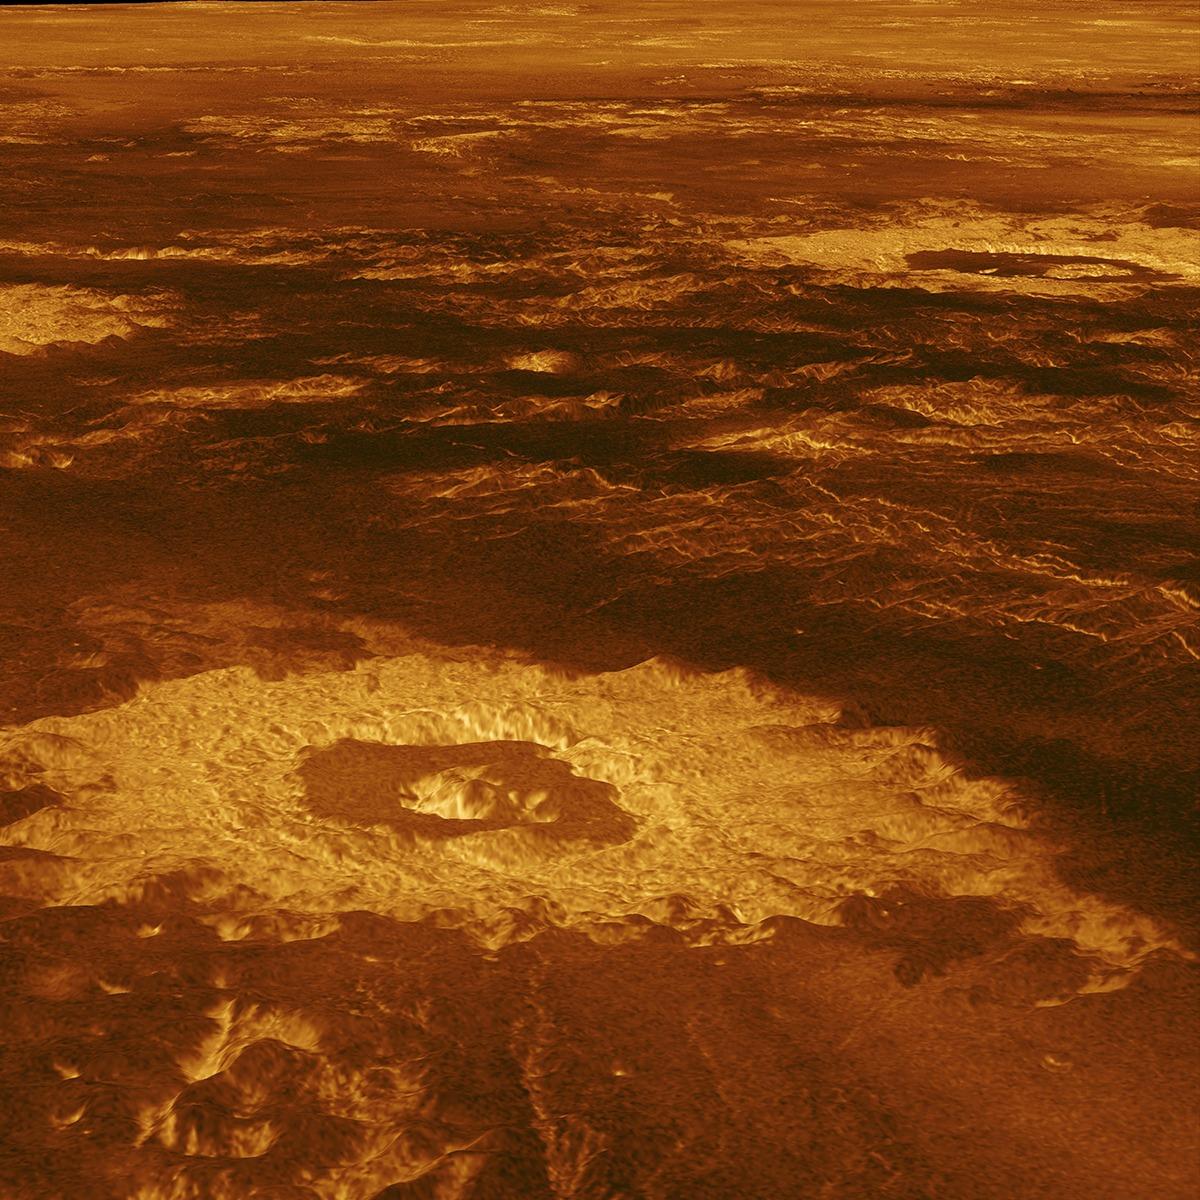 Imagens de 30 anos atrás revelam atividade vulcânica em Vênus